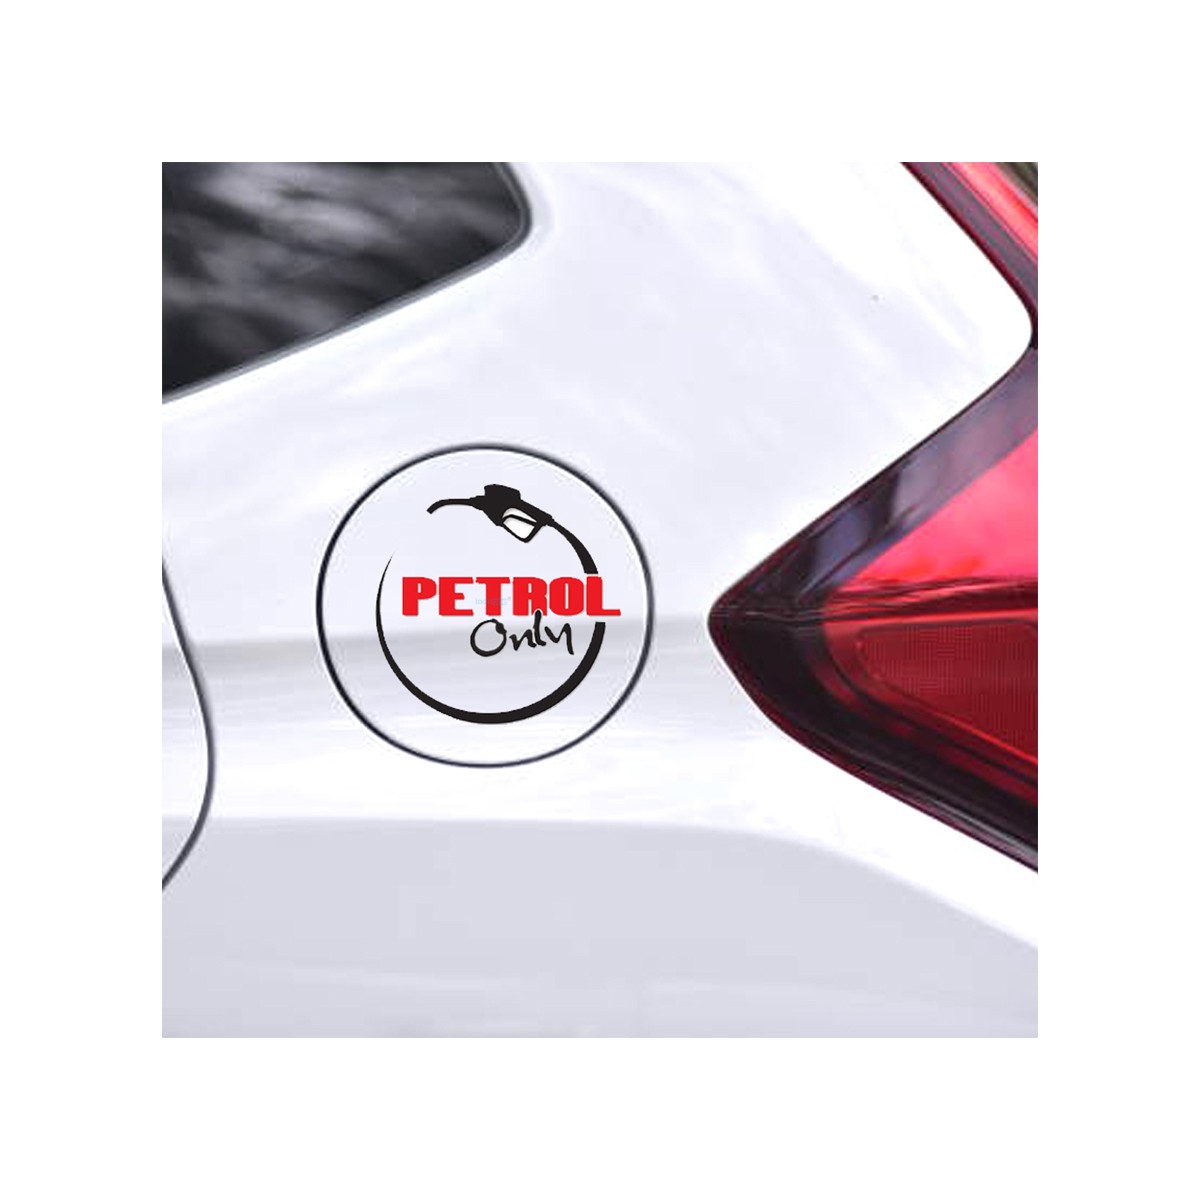 indnone® Diesel Only Logo Car Sticker for Car. Car Sticker Stylish